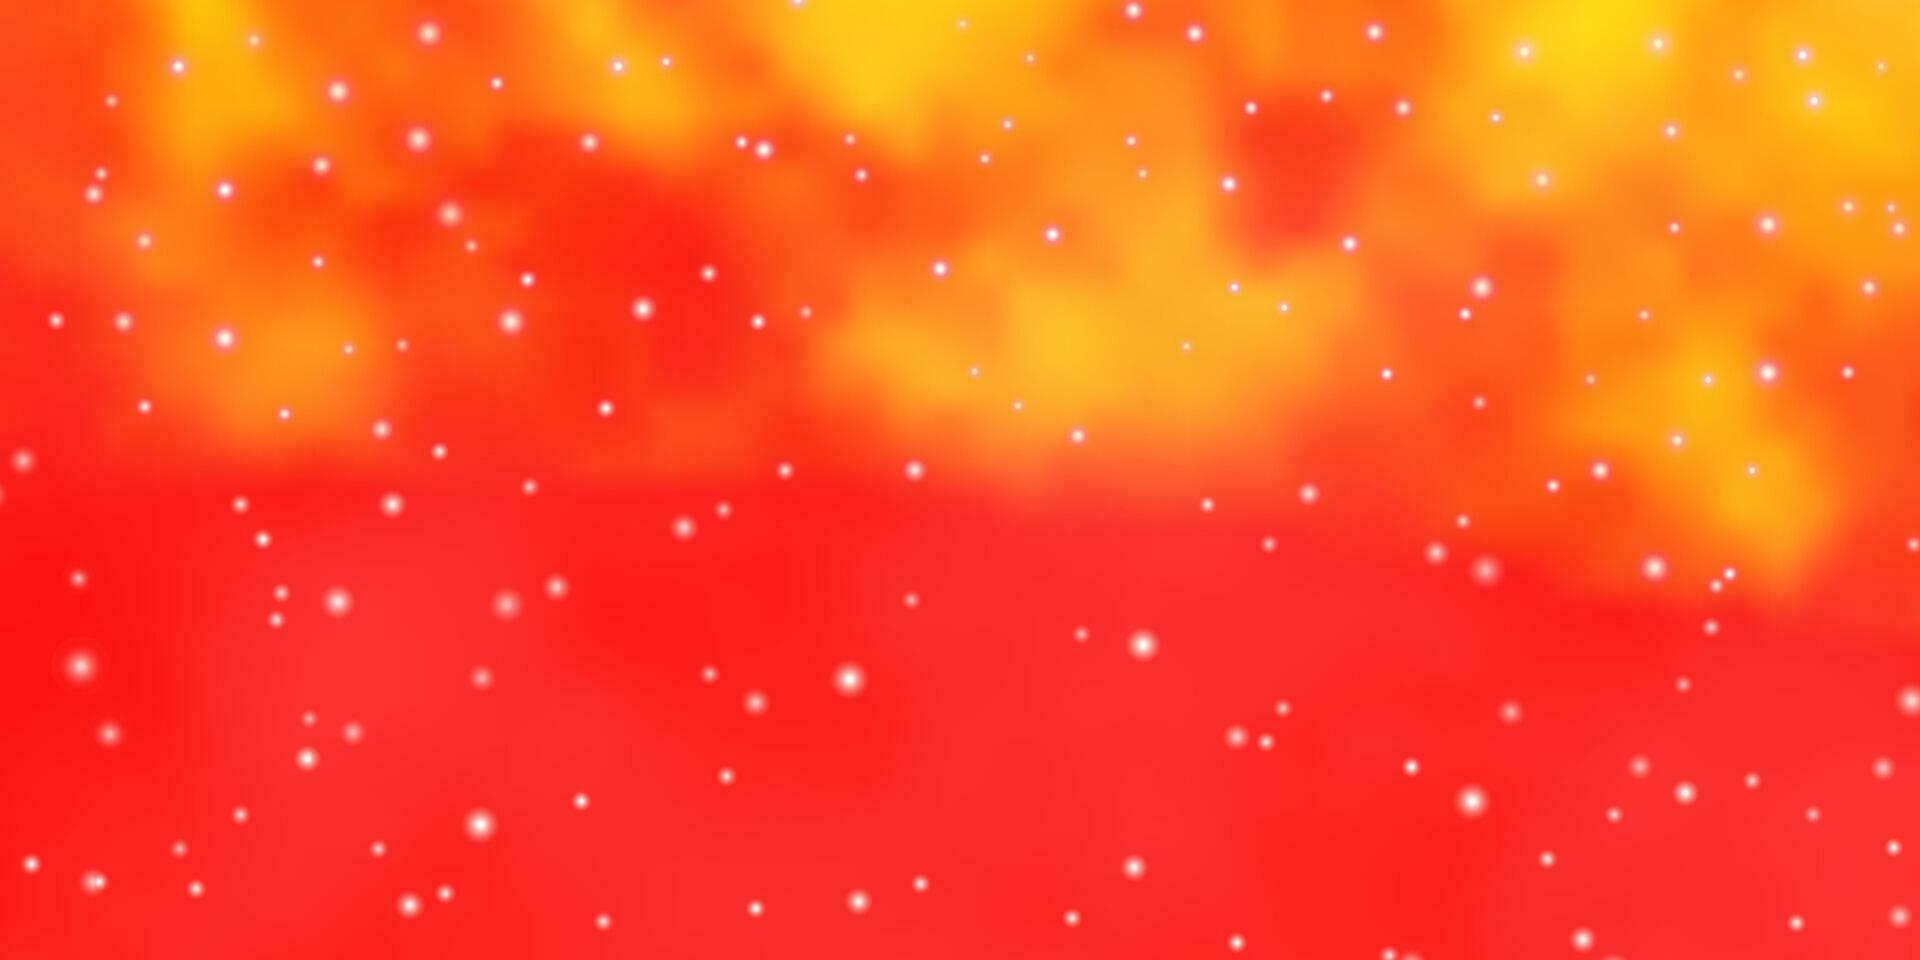 fundo vector laranja claro com estrelas coloridas.